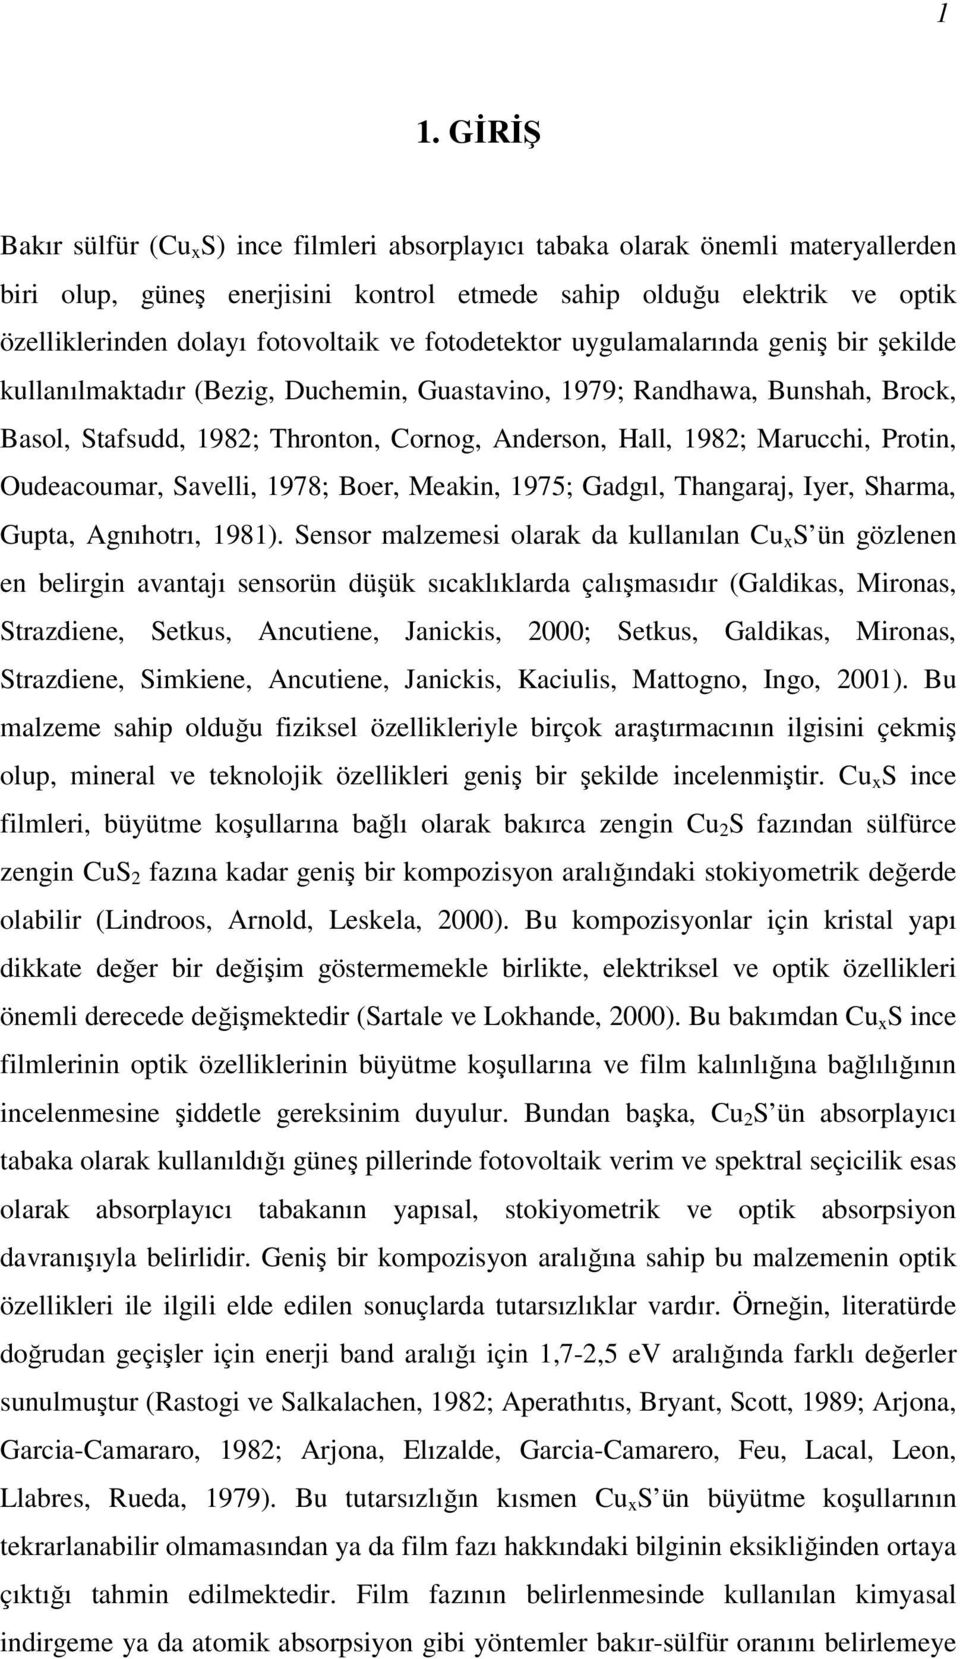 Oudeacoumar, Savelli, 978; Boer, Meakin, 975; Gadgıl, Thangaraj, Iyer, Sharma, Guta, Agnıhotrı, 98).